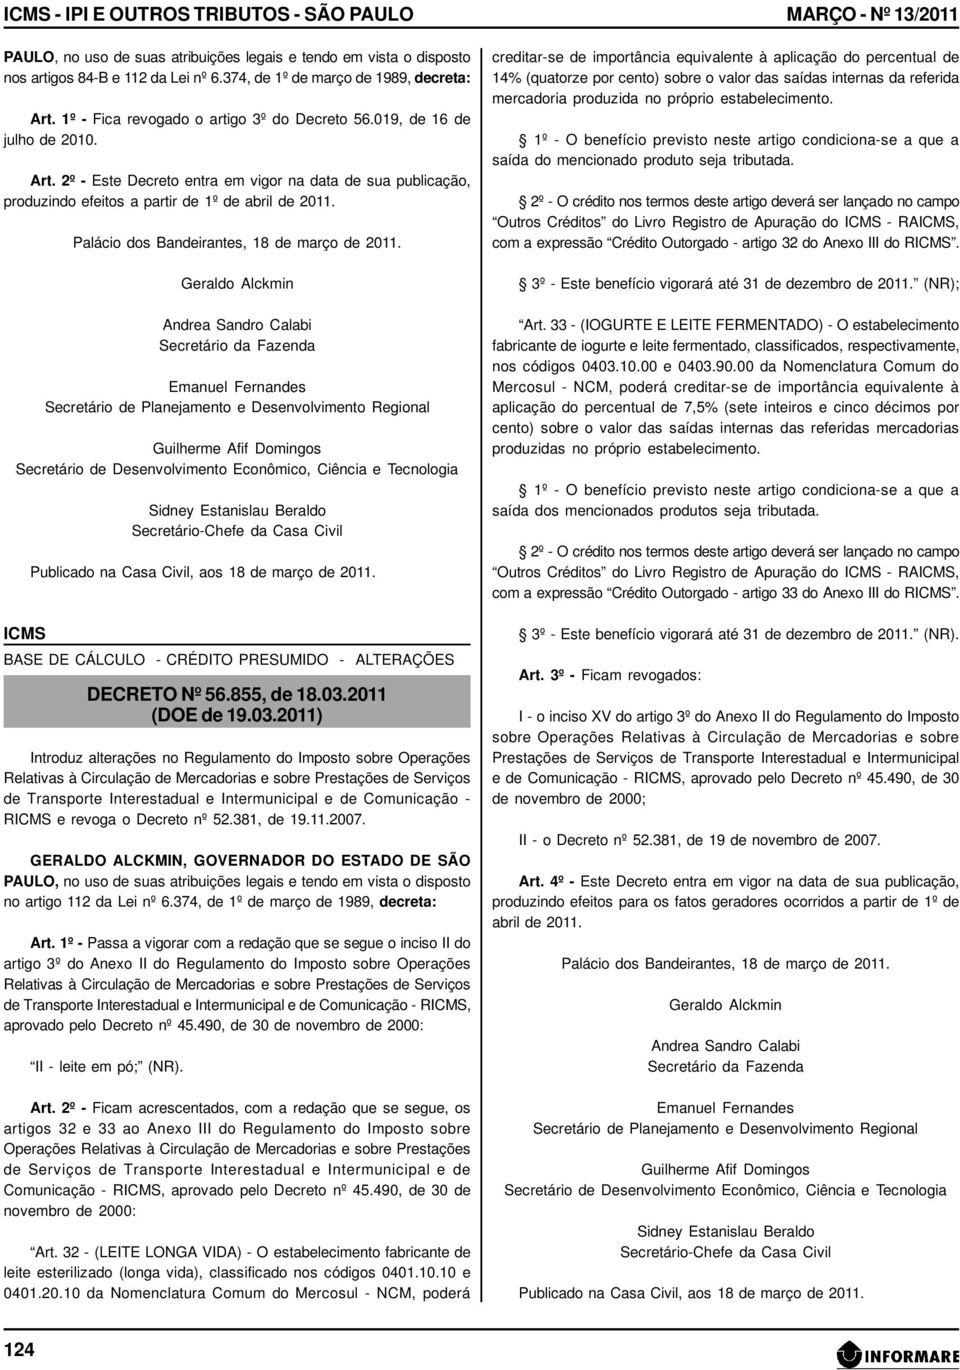 2º - Este Decreto entra em vigor na data de sua publicação, BASE DE CÁLCULO - CRÉDITO PRESUMIDO - ALTERAÇÕES DECRETO Nº 56.855, de 18.03.